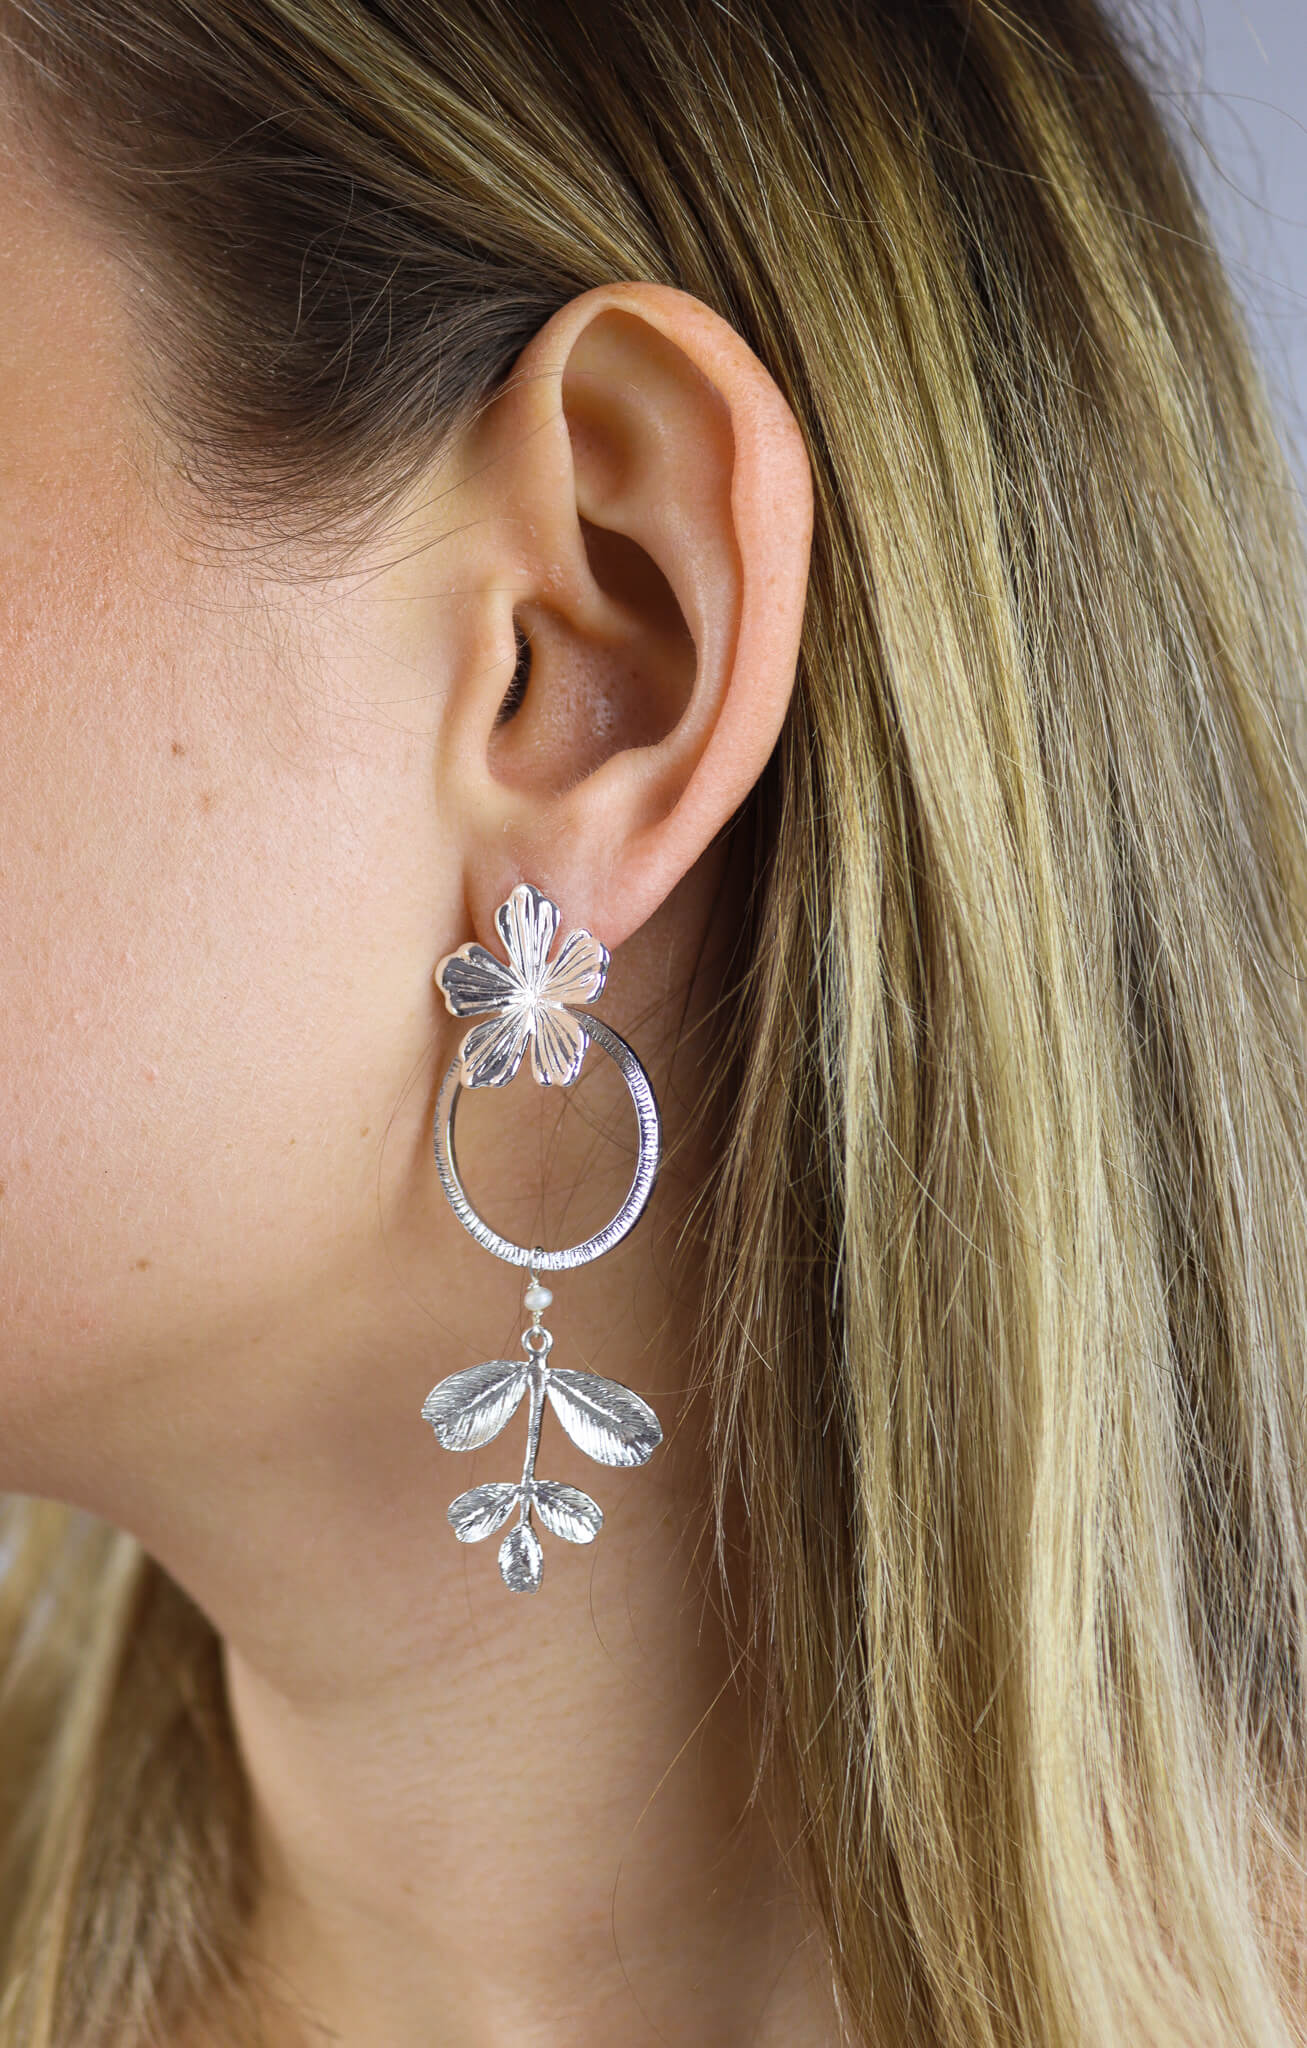 Stay-Gold-Djizhea-Flower-Stud-earrings-close-up